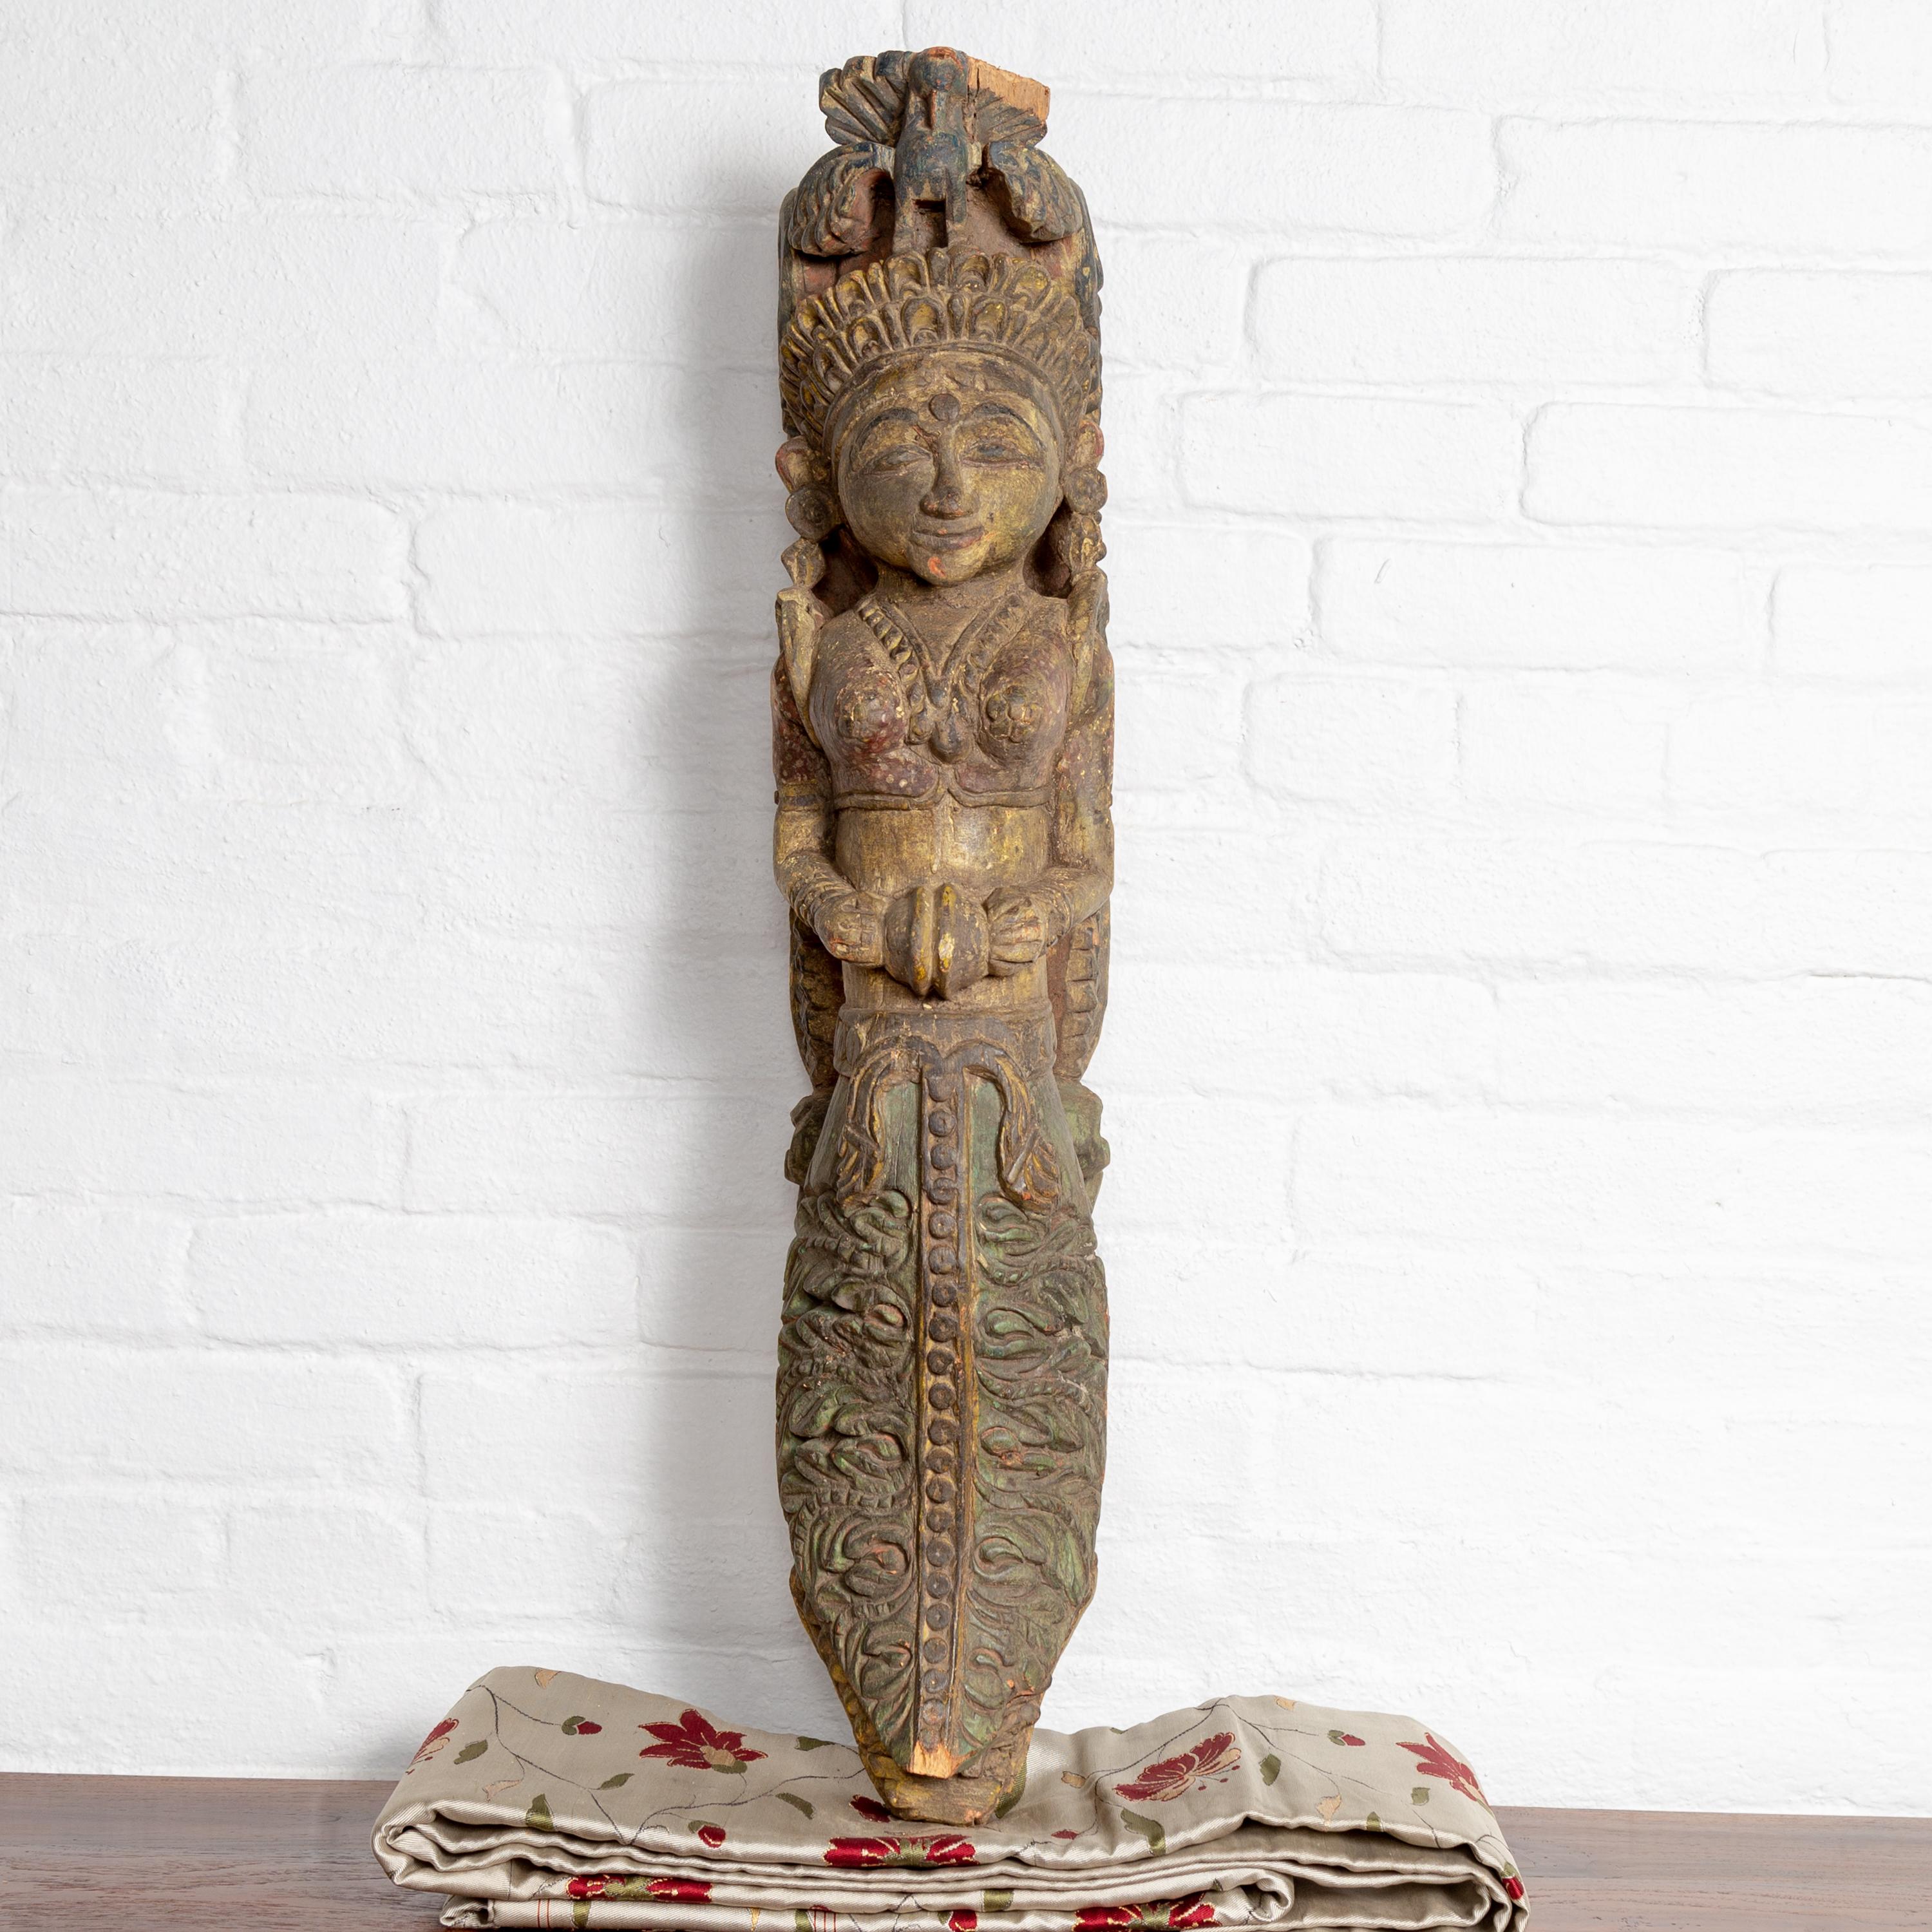 Sculpture indienne ancienne en bois polychrome et sculptée à la main, datant du début du XXe siècle, représentant un musicien céleste jouant d'un instrument. Cette captivante sculpture en bois capture magnifiquement l'essence de la musique céleste